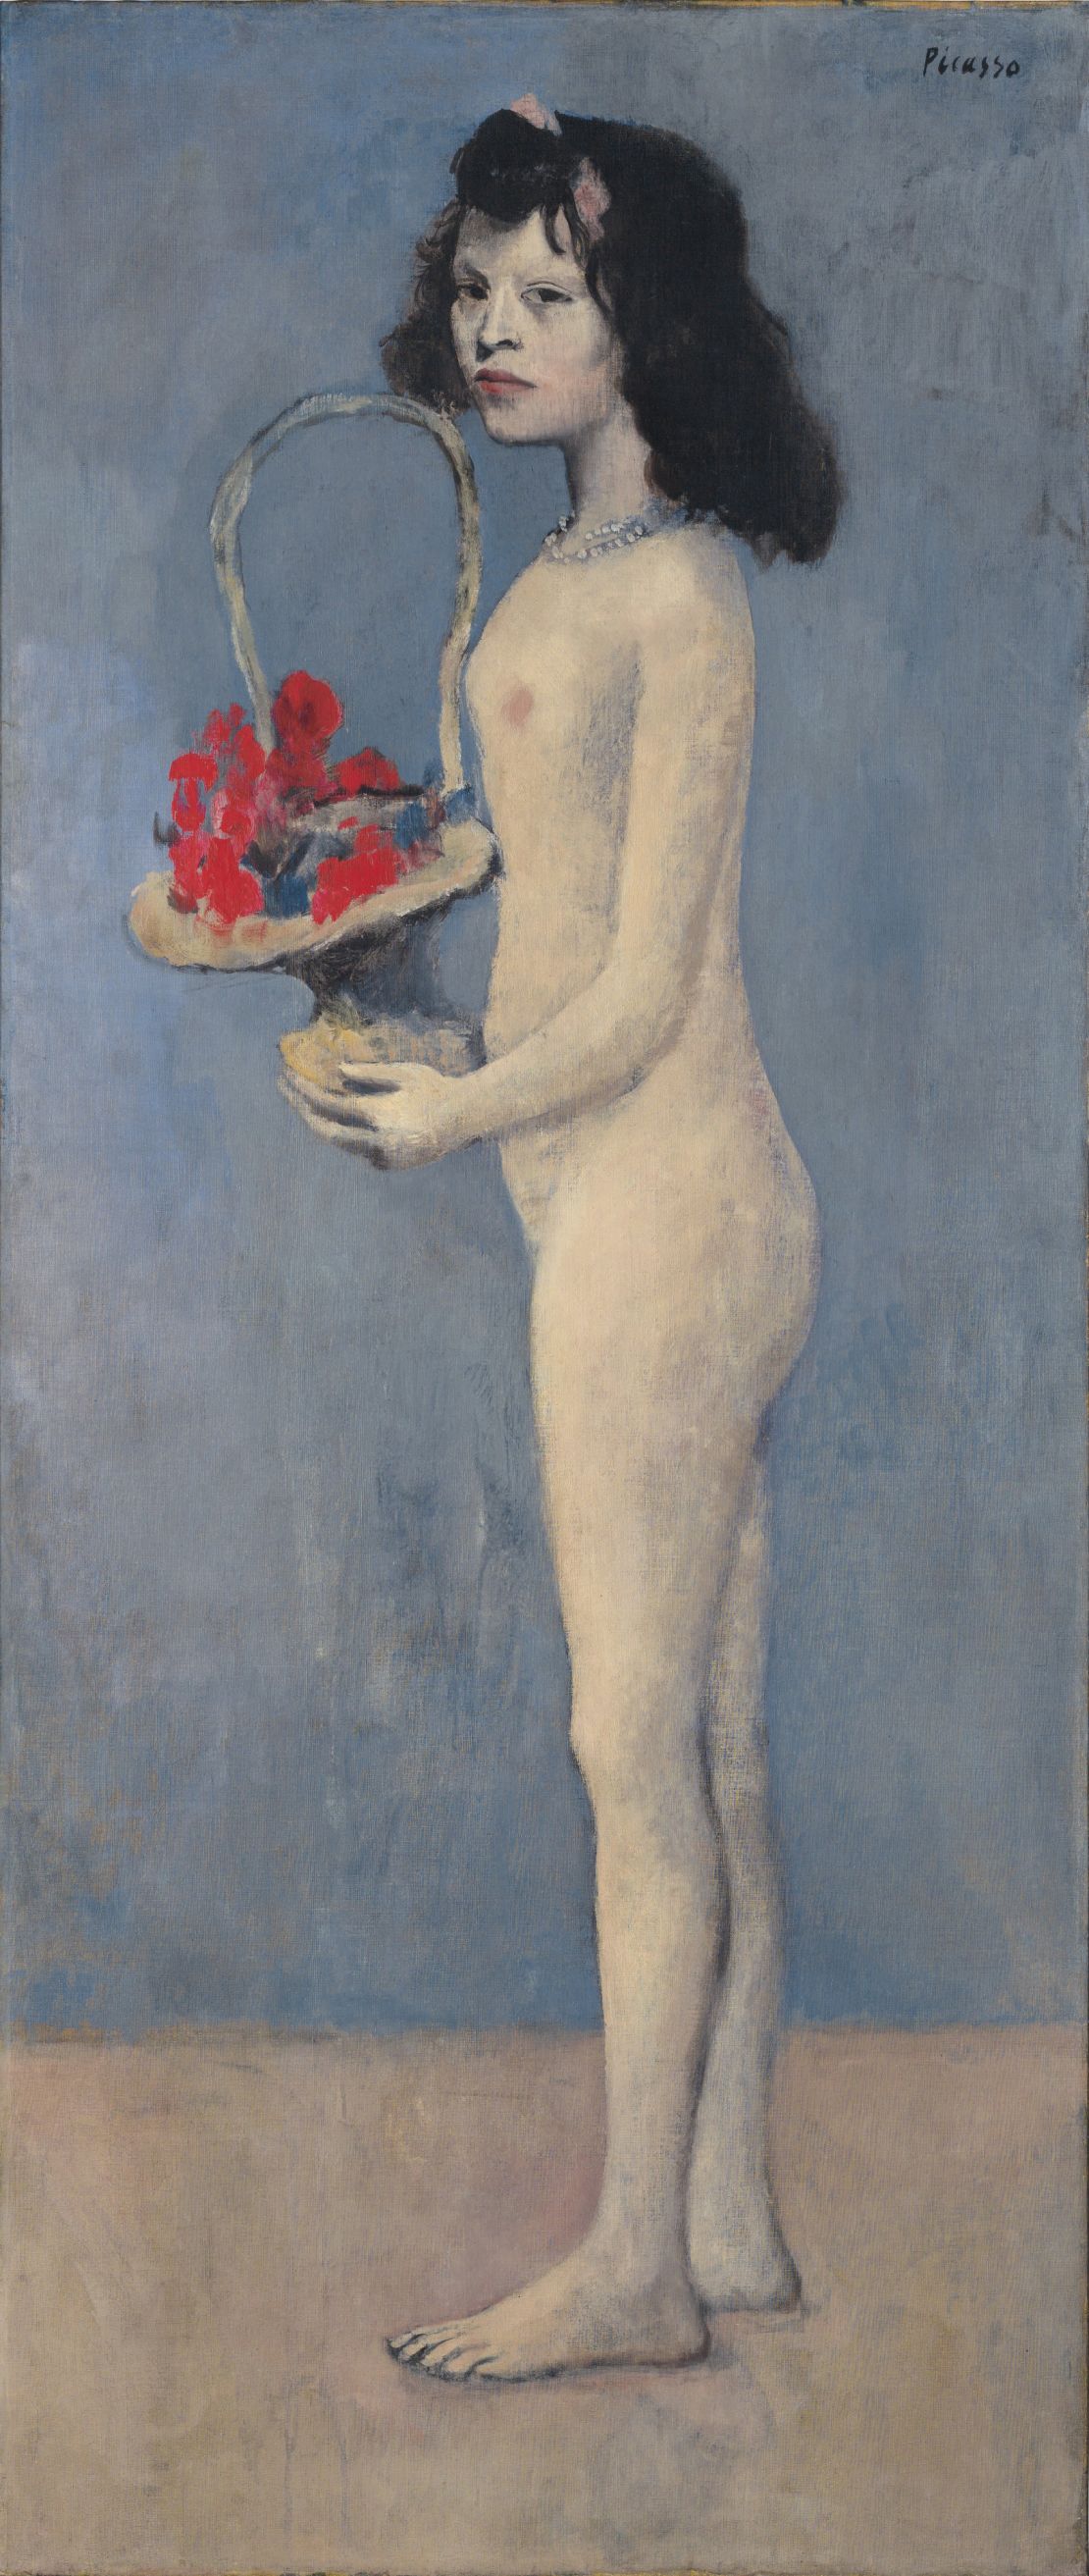 Pablo Picasso's "Fillette à la corbeille fleurie"